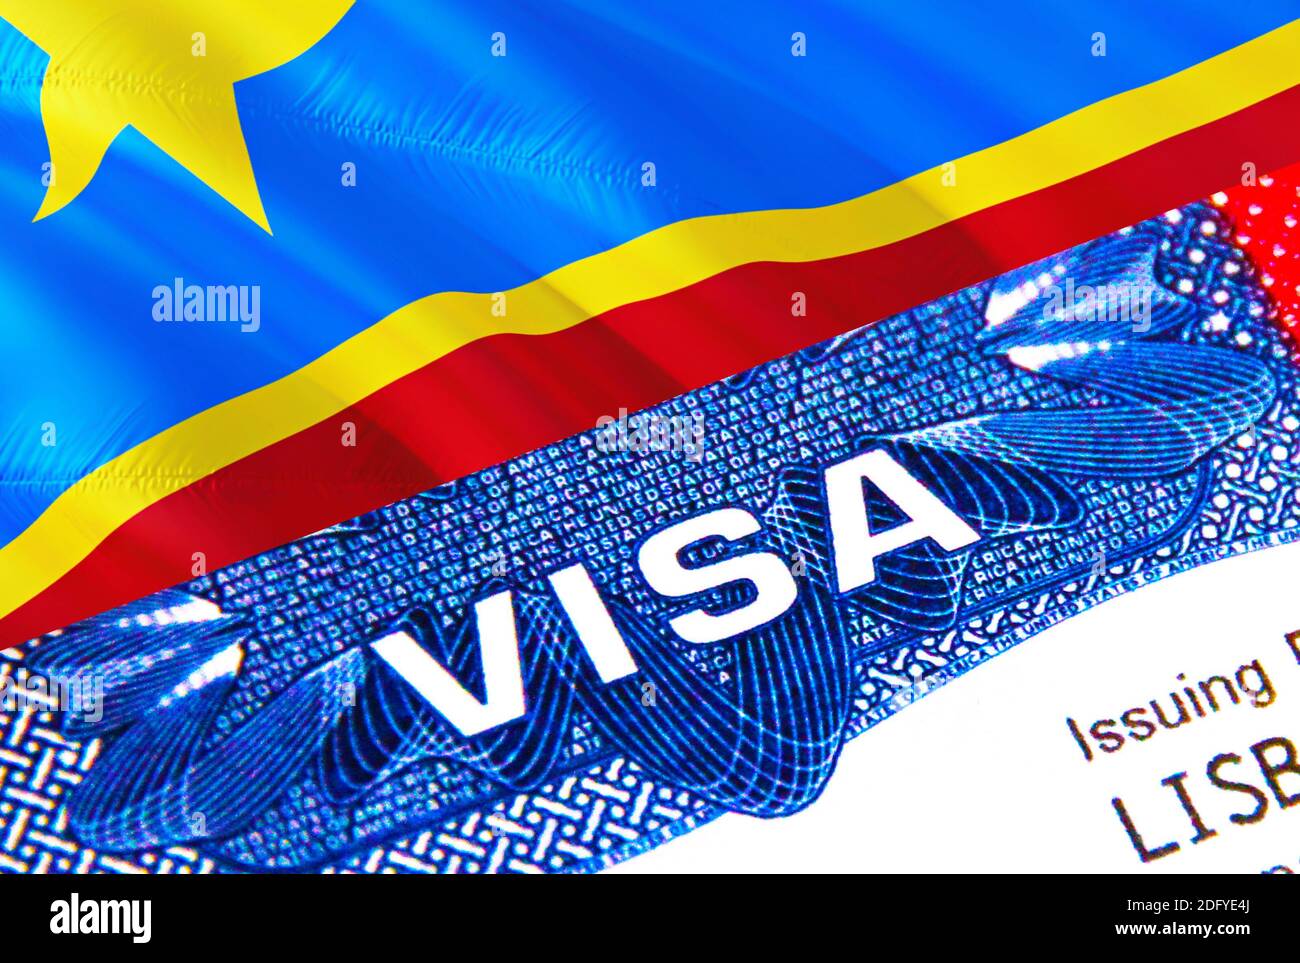 Dubaï supprime le visa de 30 jours pour 20 pays africains dont la RDC